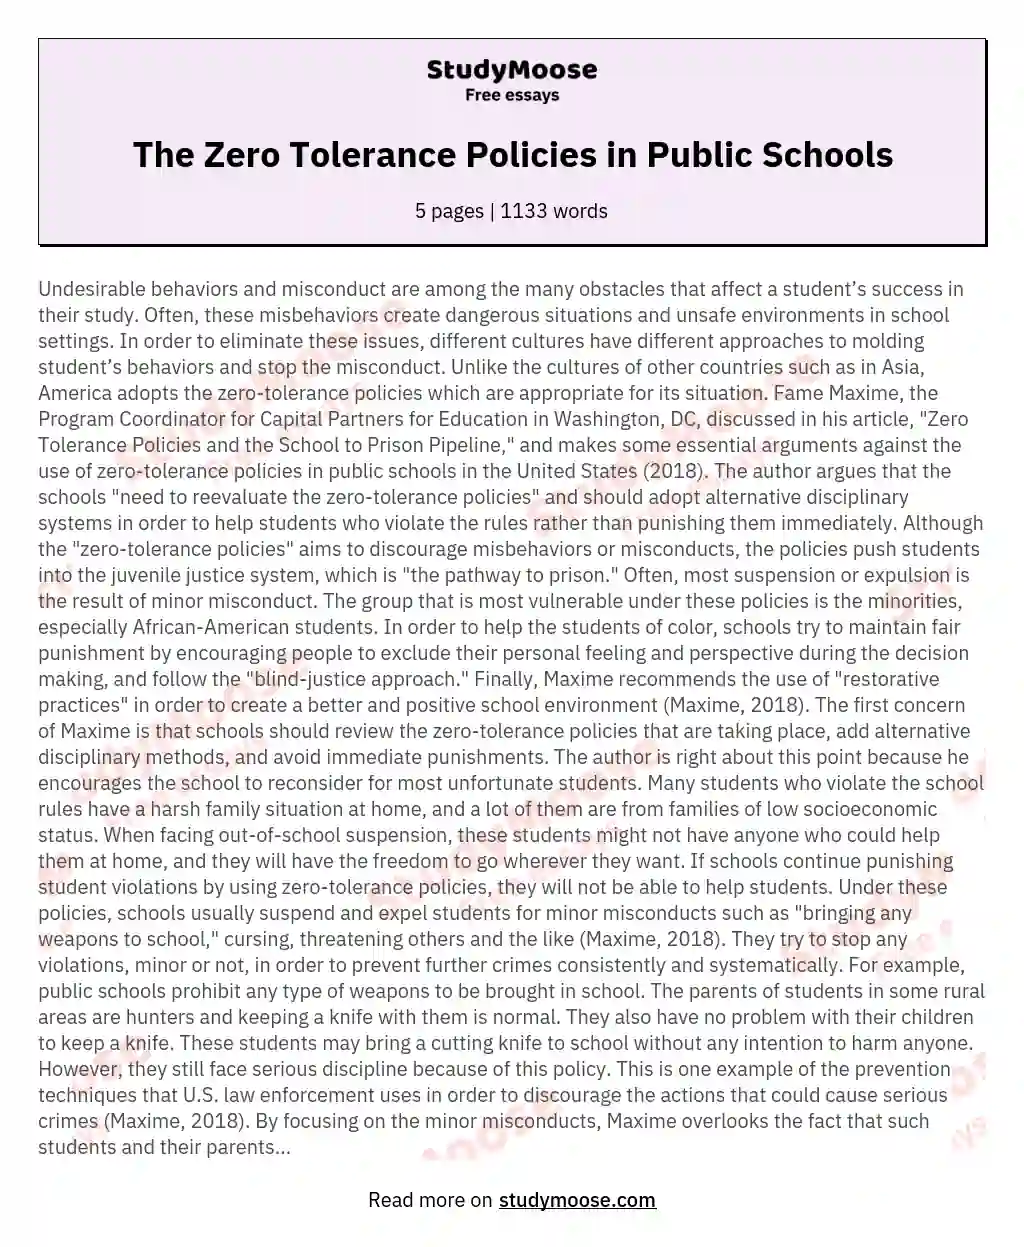 The Zero Tolerance Policies in Public Schools essay